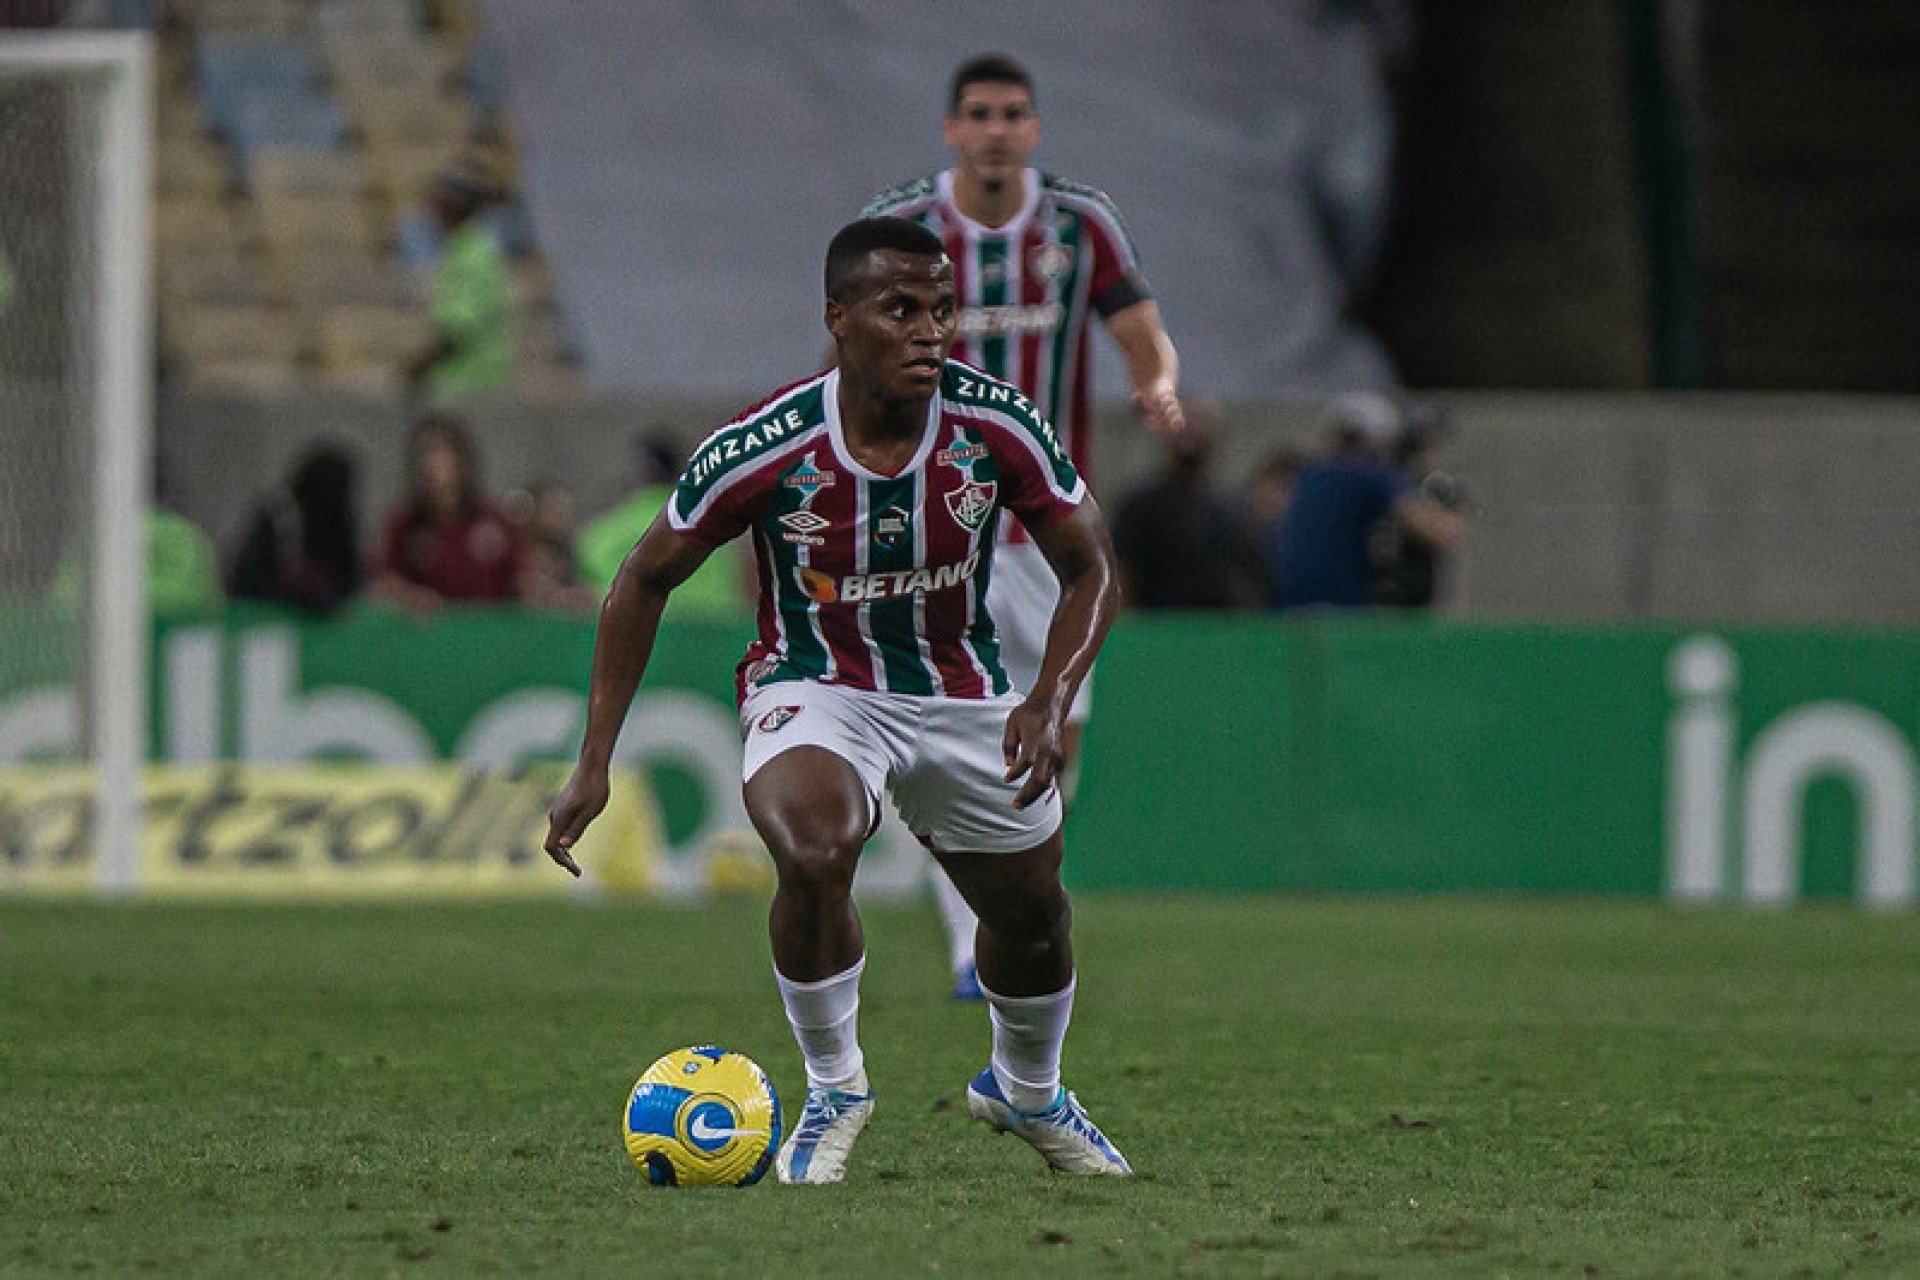 Jhon Arias é alvo do futebol português para a próxima temporada • Saudações  Tricolores